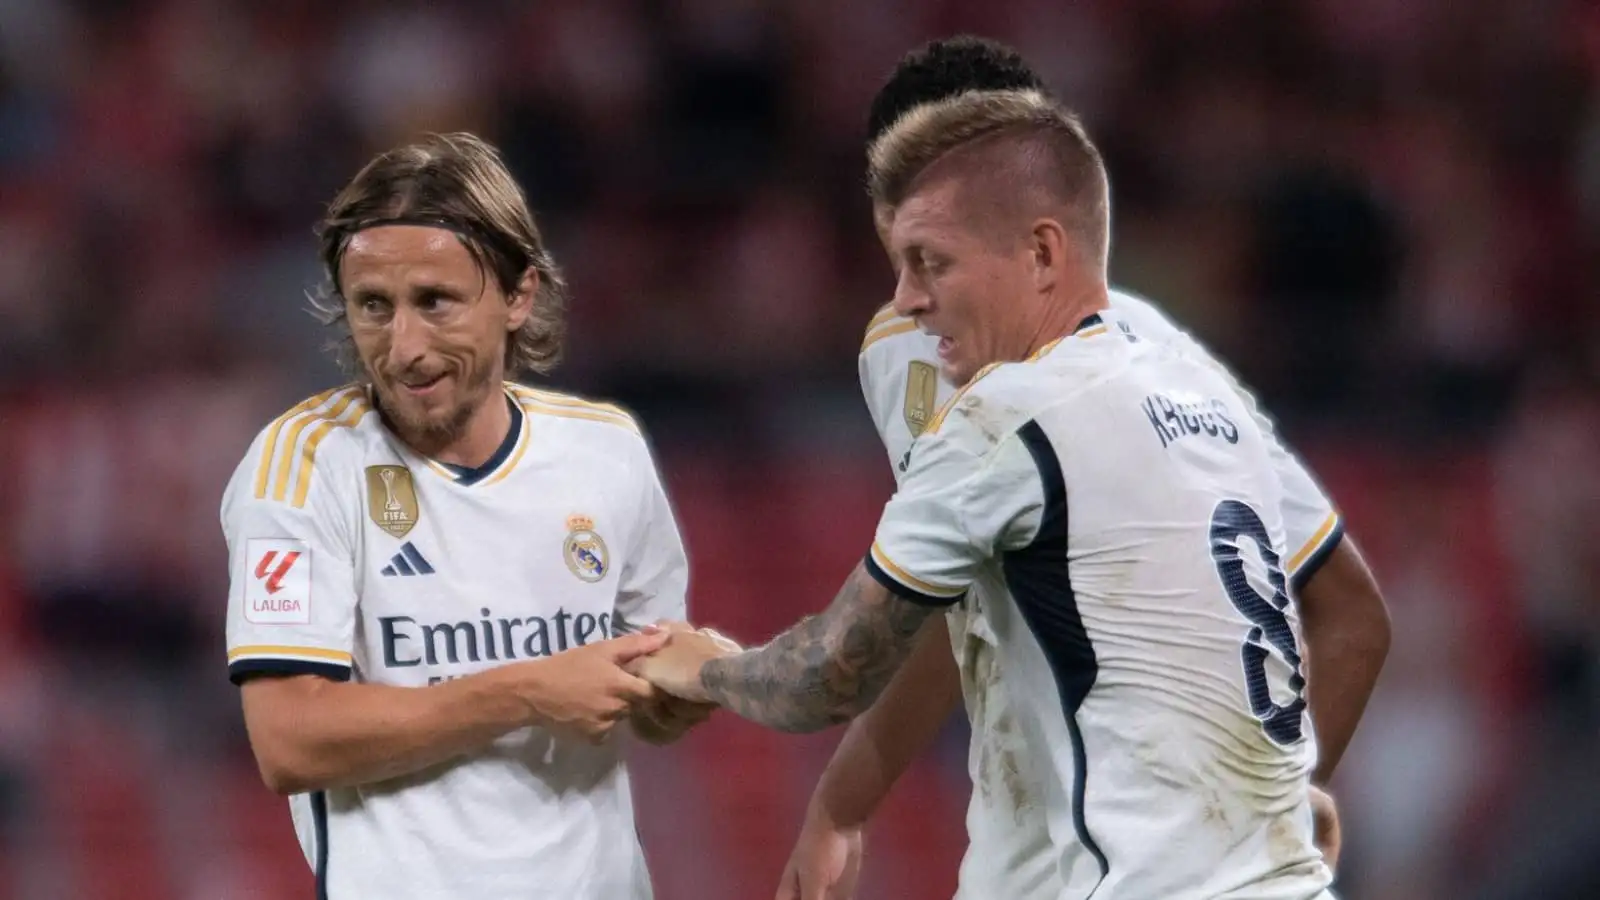 Real Madrid midfielders Luka Modric and Toni Kroos